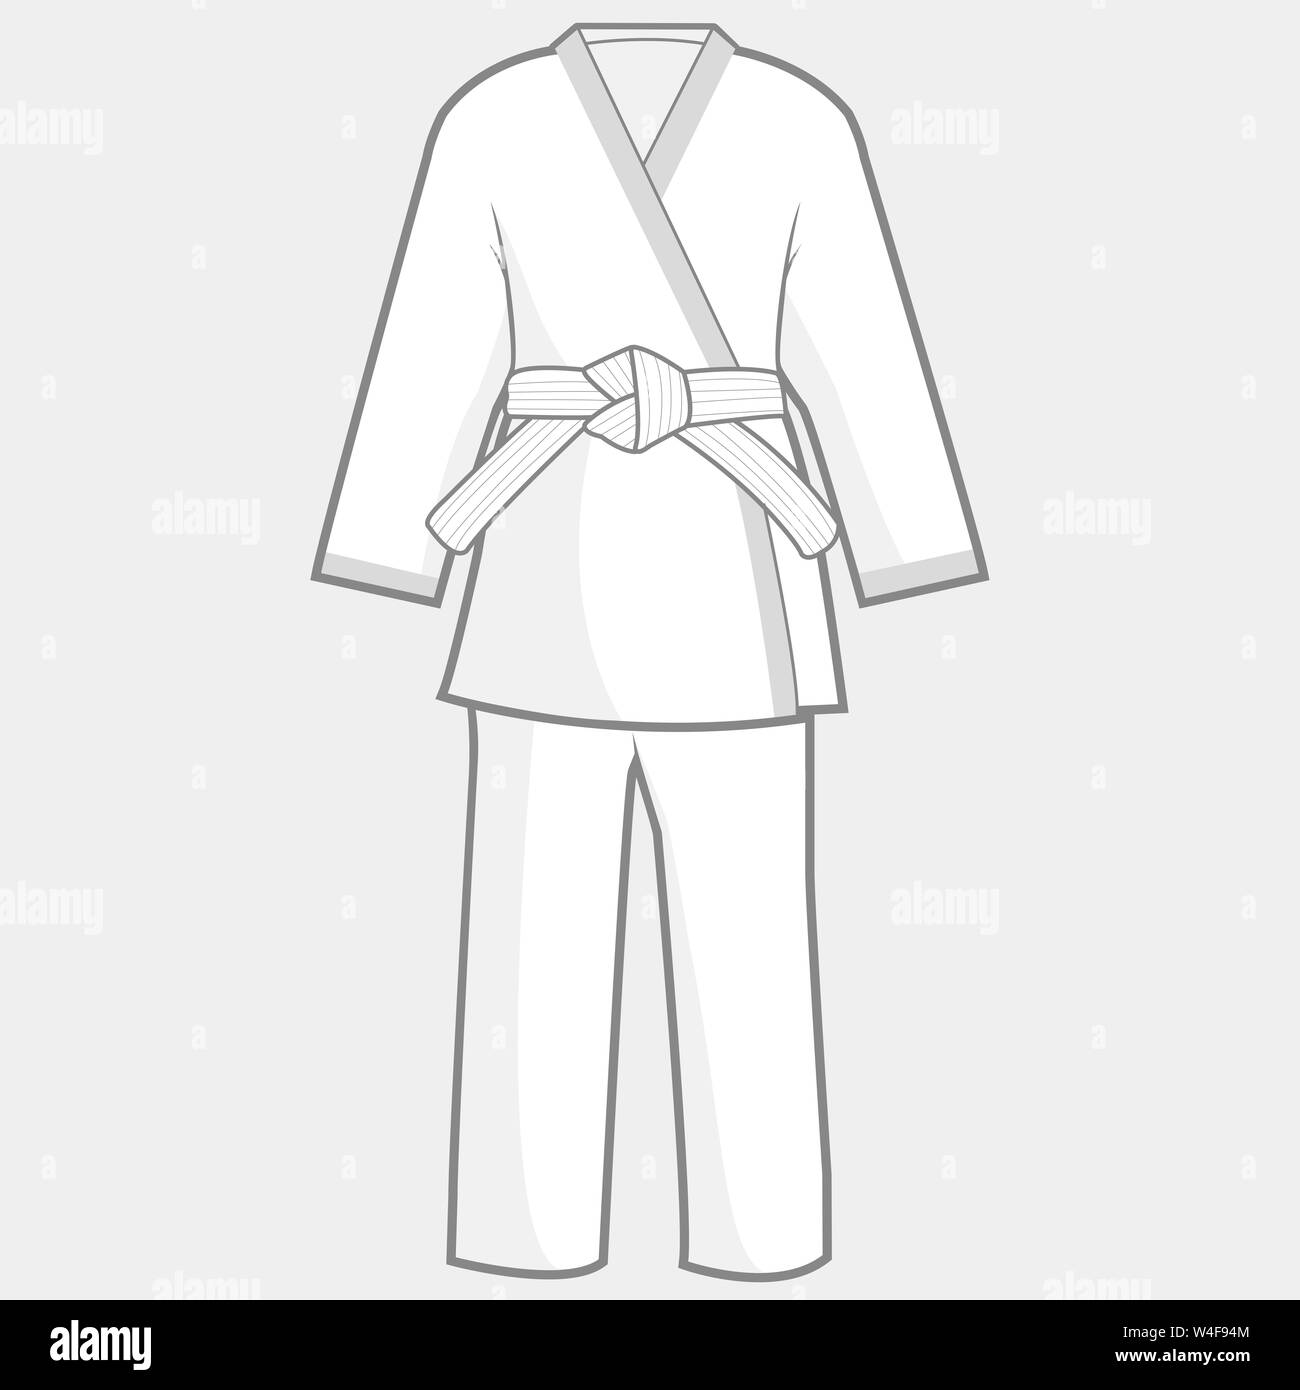 Abbildung: martial arts Uniform. Karate, Taekwondo, Judo, Jujitsu, Kickboxen oder kung fu Anzug. Stockfoto